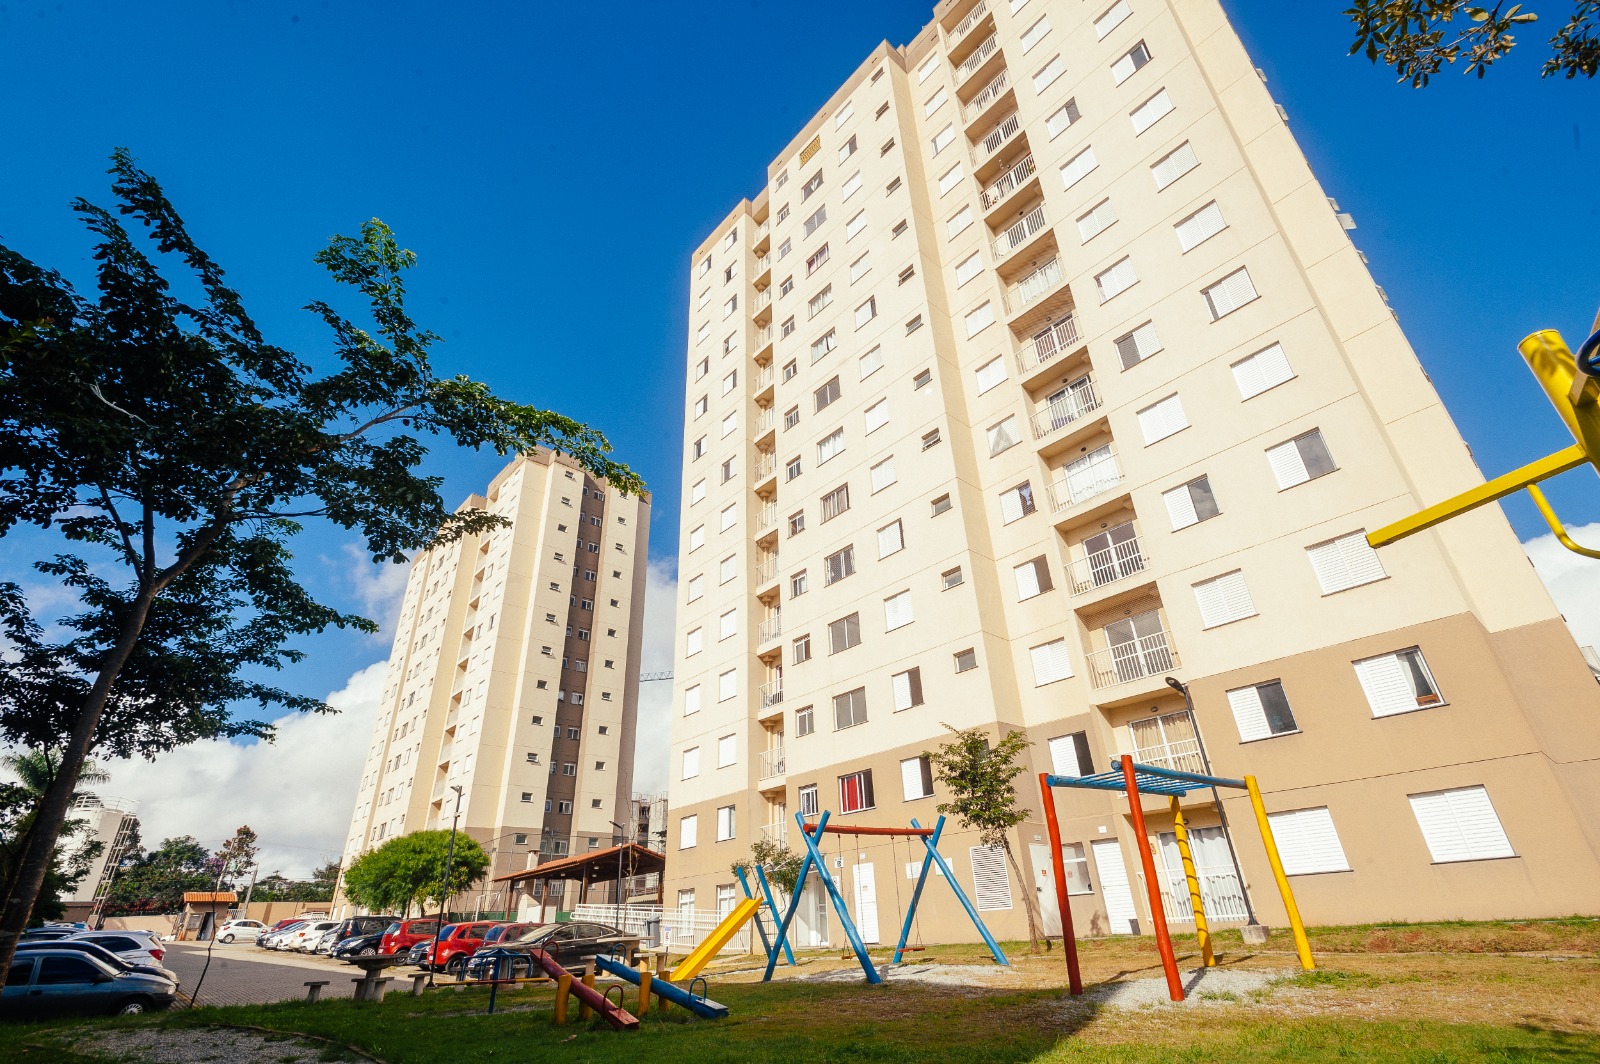 Habitação em destaque: Justiça libera programa habitacional Pode Entrar da Prefeitura de São Paulo